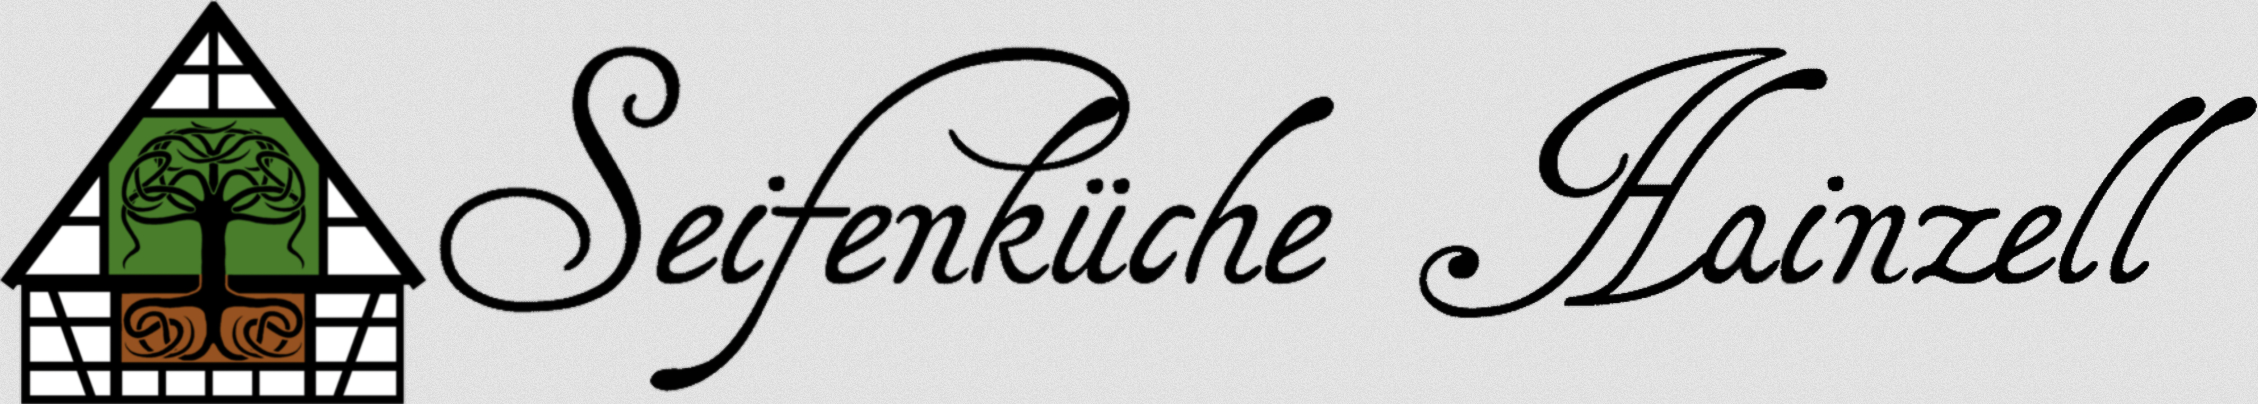 Seifenküche Hainzell Logo